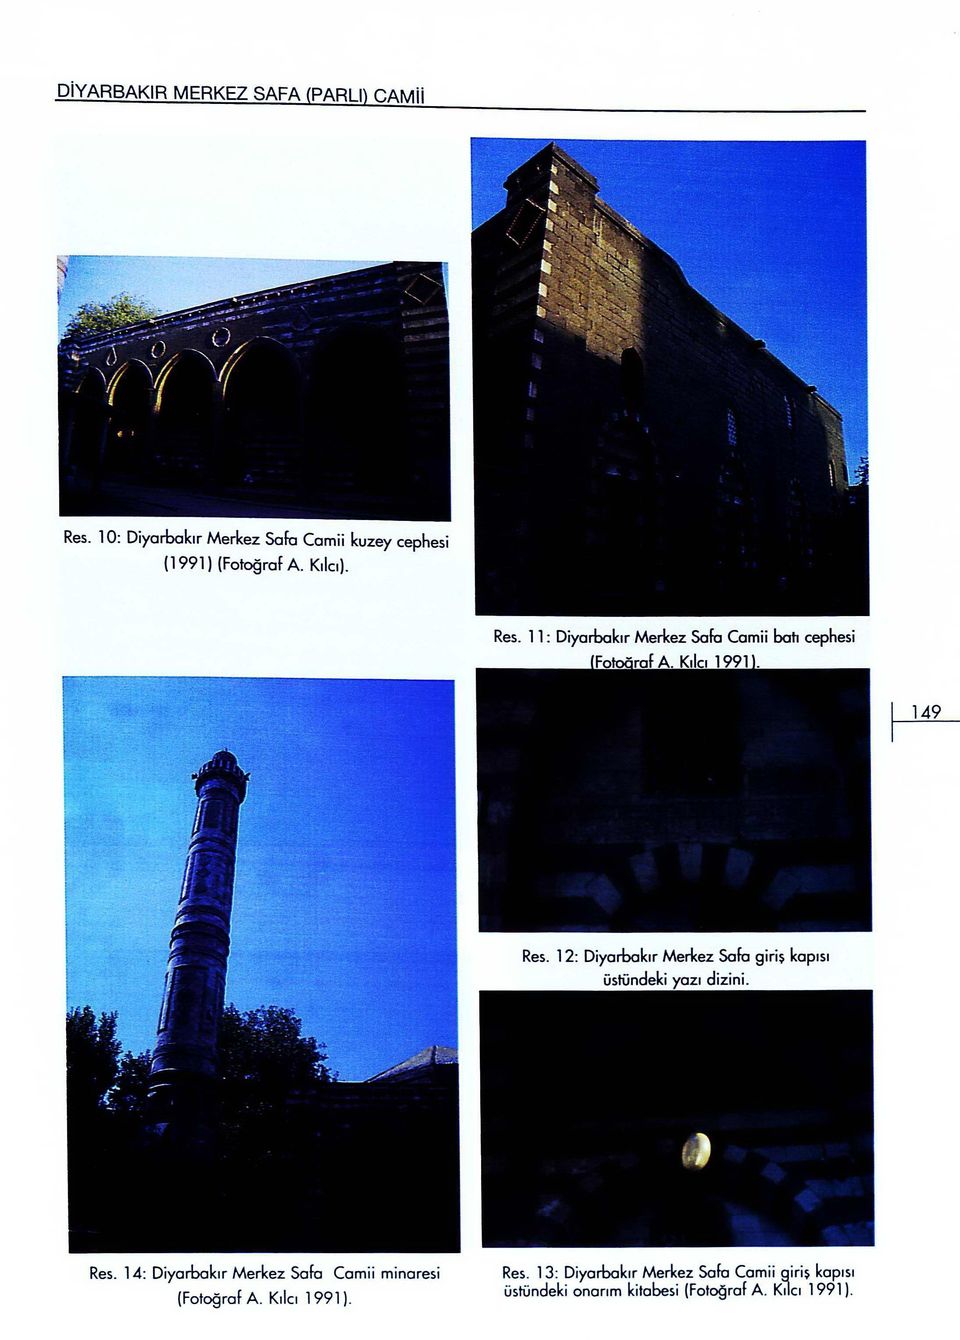 11: Diyarbakır Merkez Safa Camii batı cepfıesi Fo 991 ra Res.